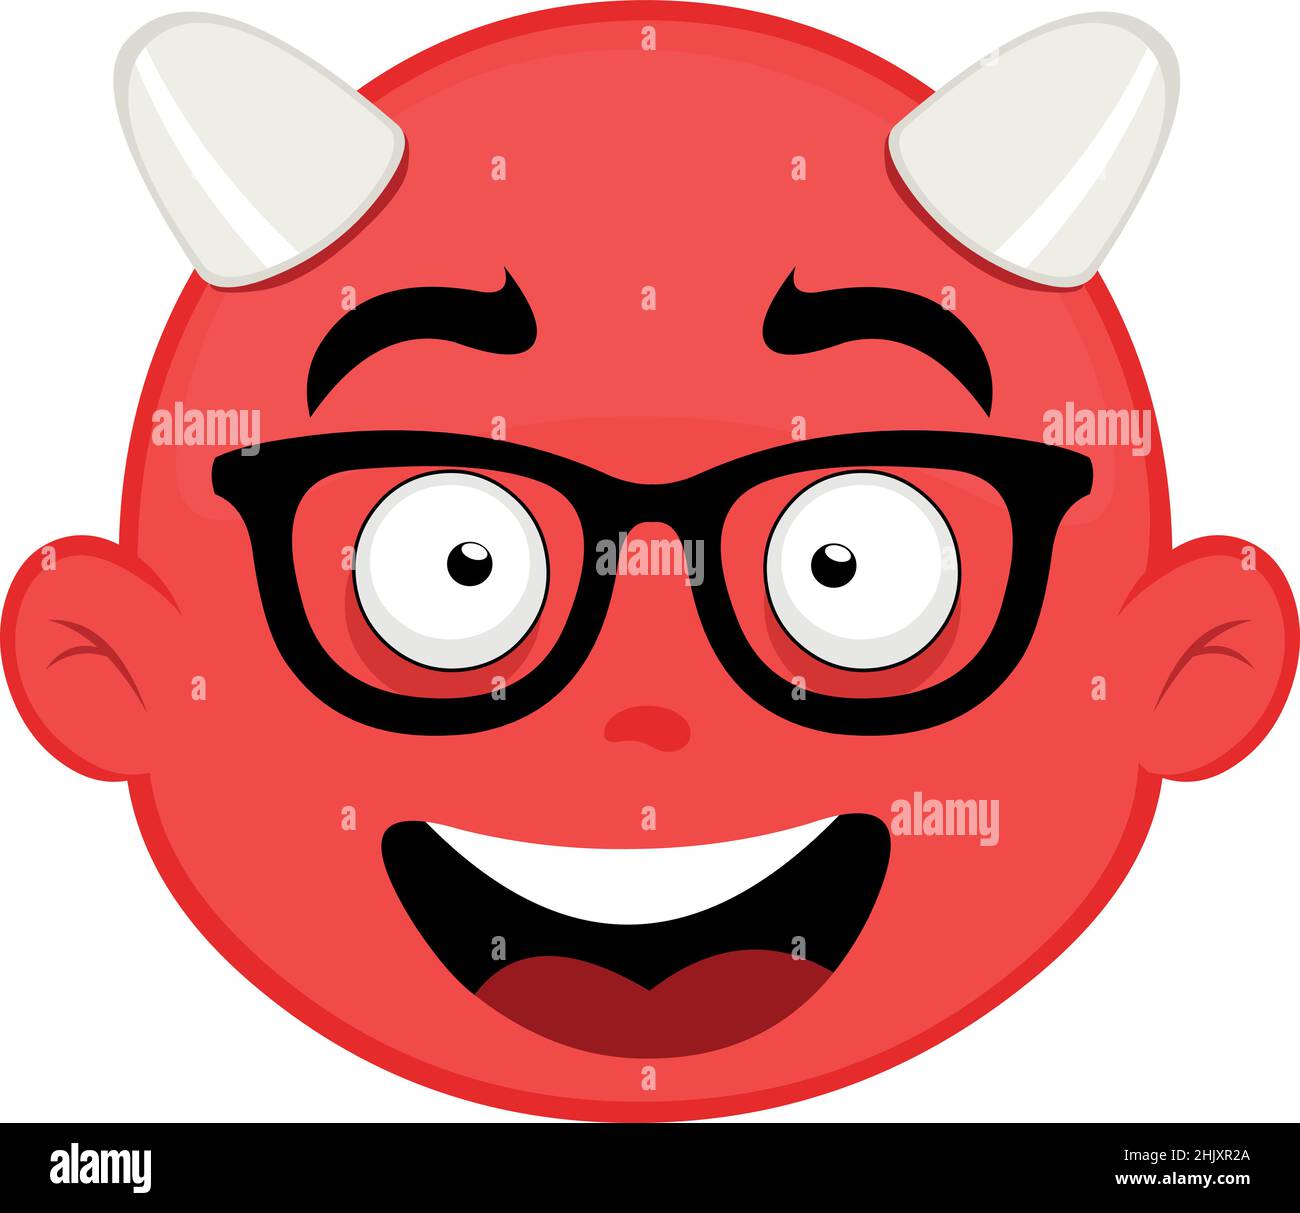 Illustration vectorielle du visage d'un diable de dessin animé avec une expression heureuse et des lunettes de nerdy Illustration de Vecteur